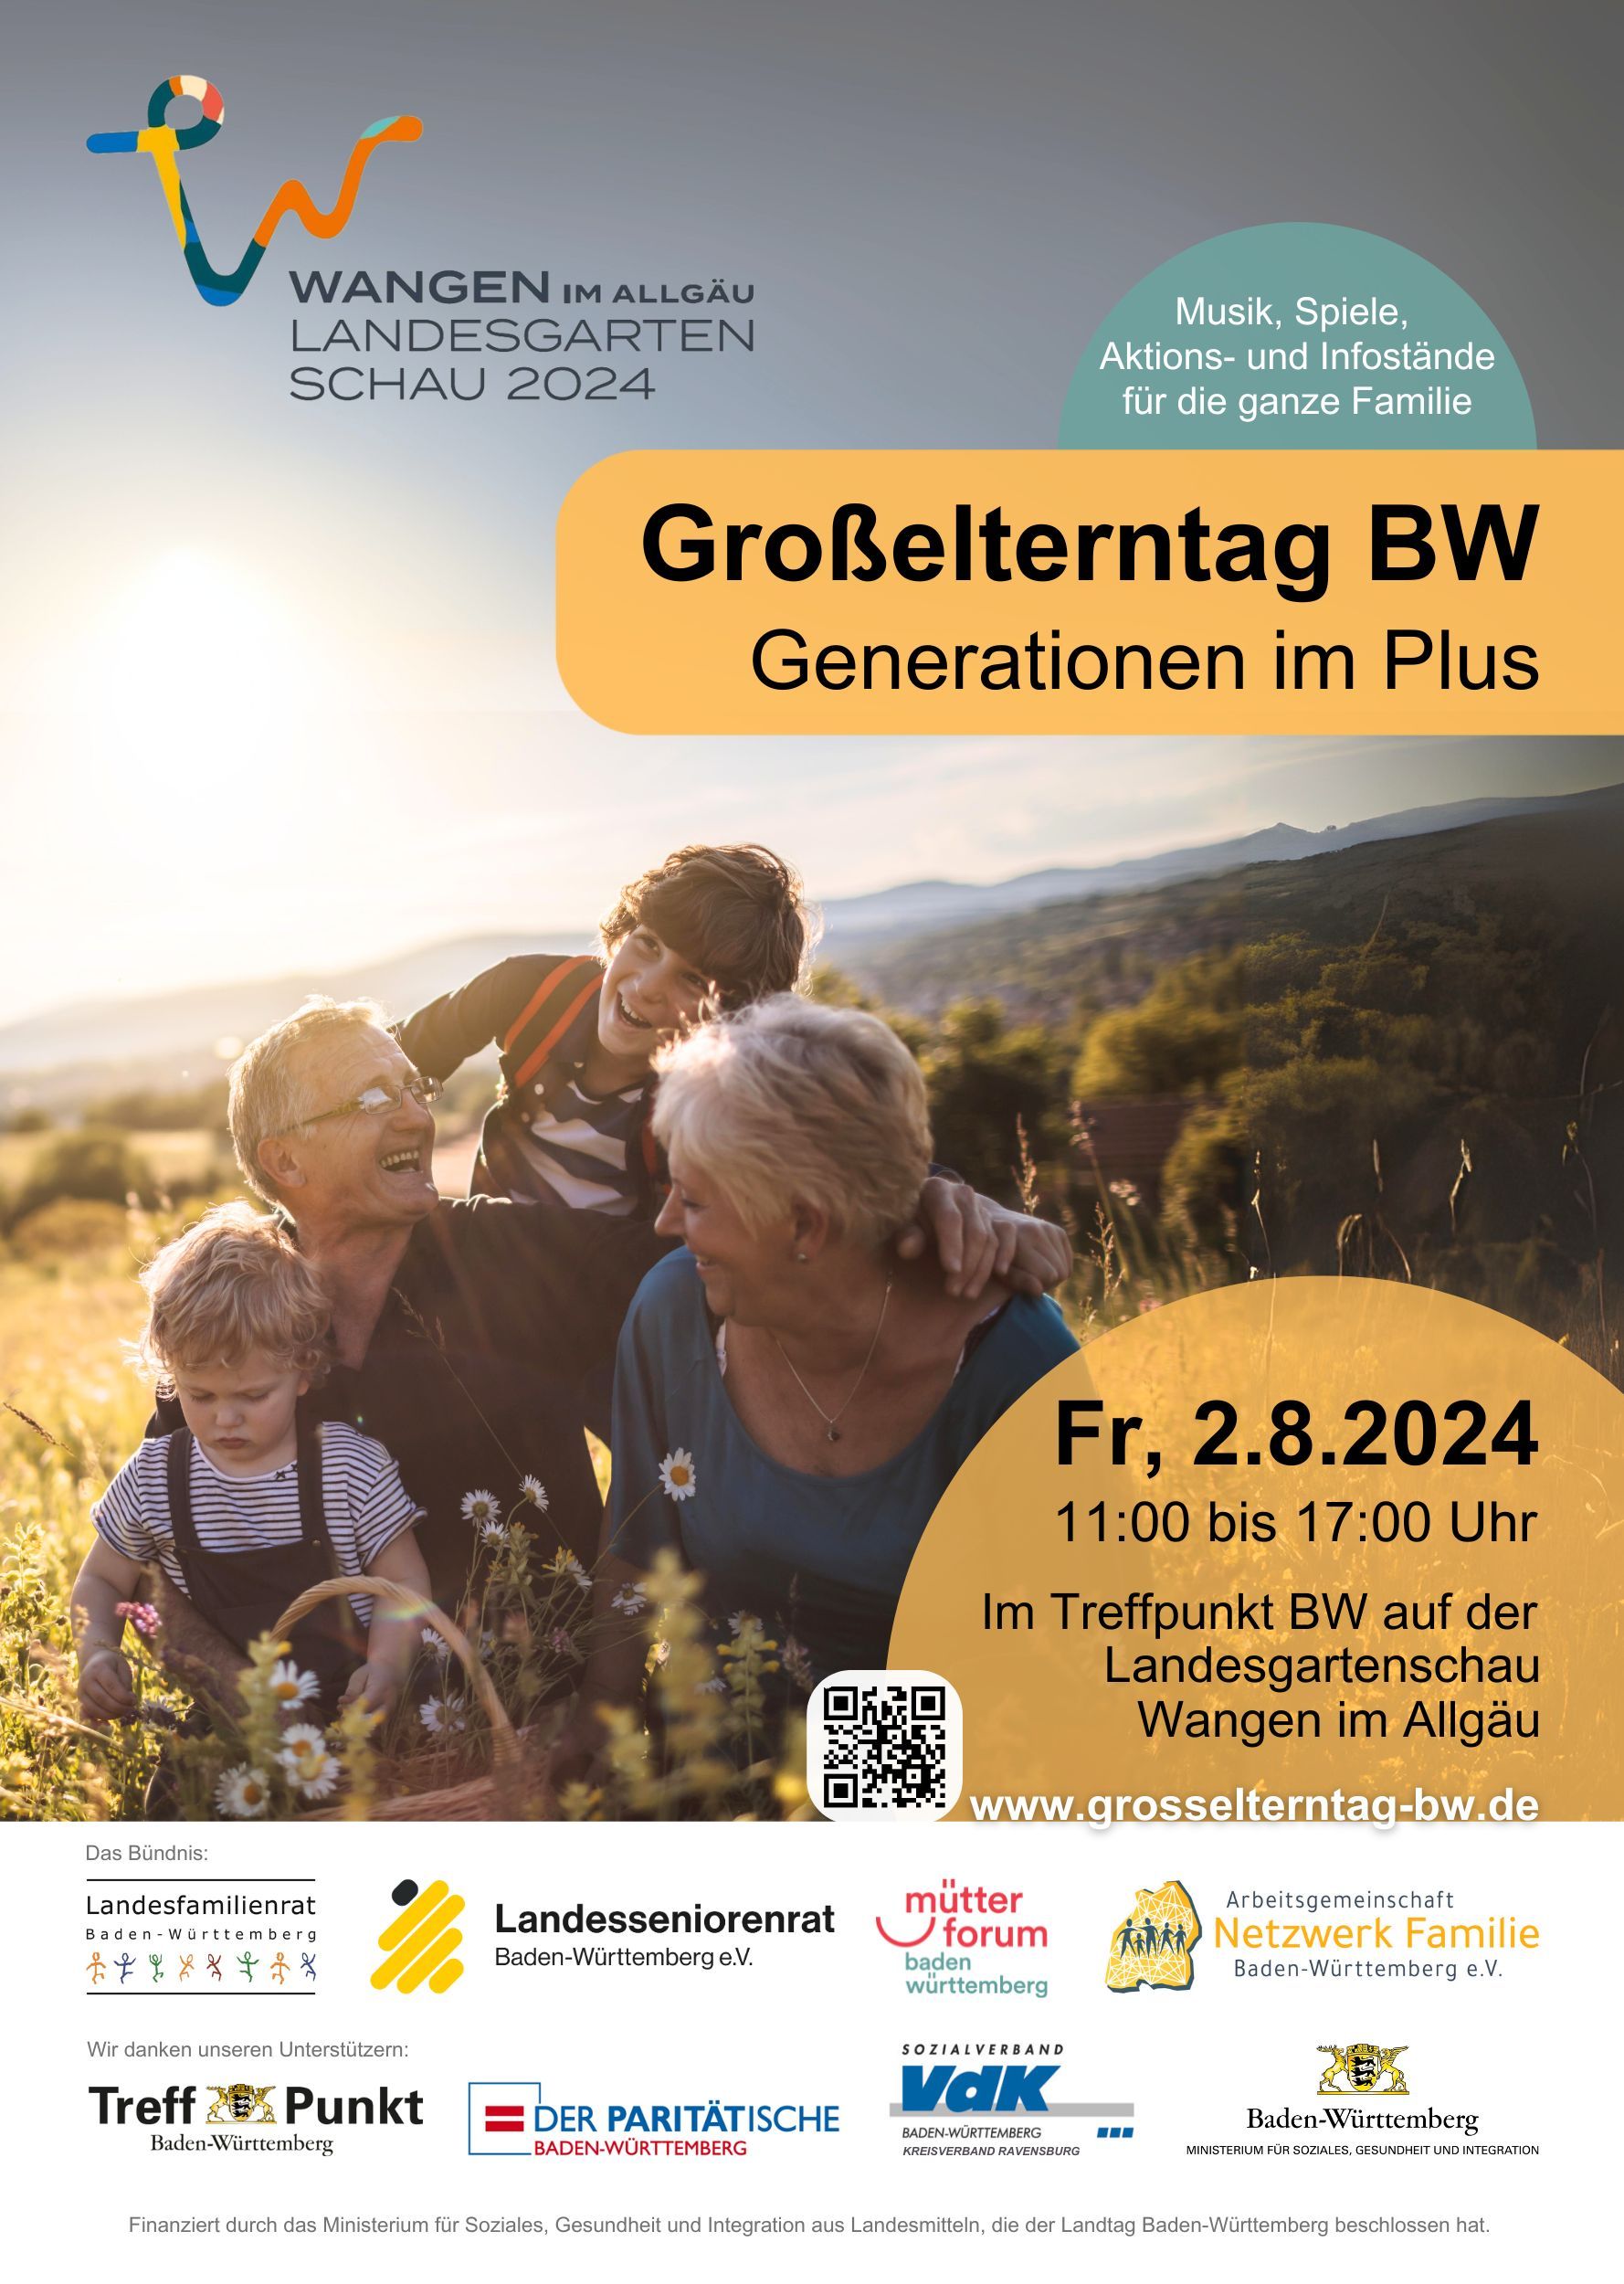 Großelterntag am 2. August 2024 im Treffpunkt BW auf der Landesgartenschau in Wangen im Allgäu